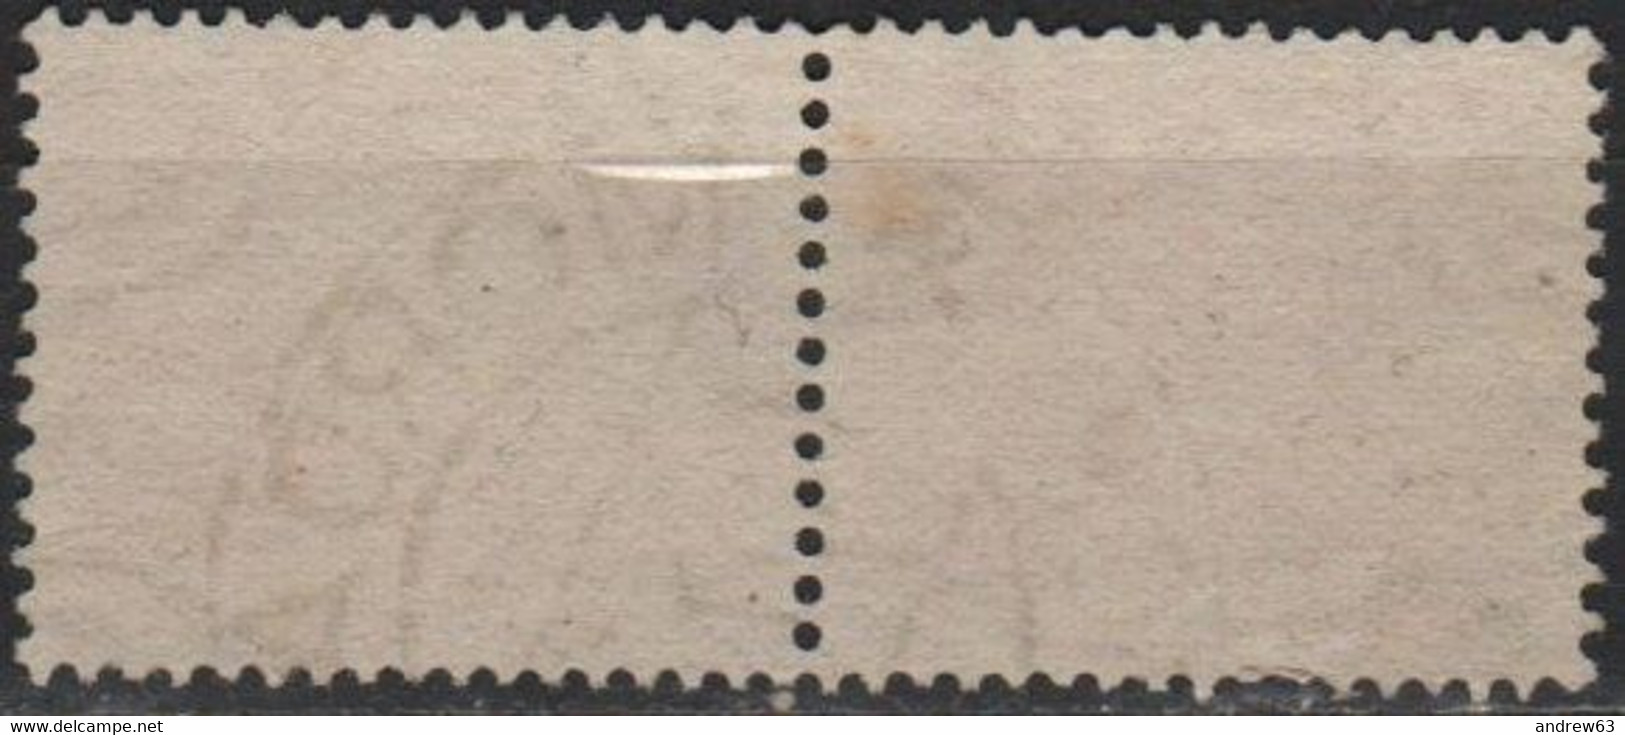 Regno D' ITALIA - ITALY - ITALIE - 1945 - Coppia Di 1 Lira Segnatasse Senza Fasci, Filigrana Ruota - Usato - Used - Postage Due